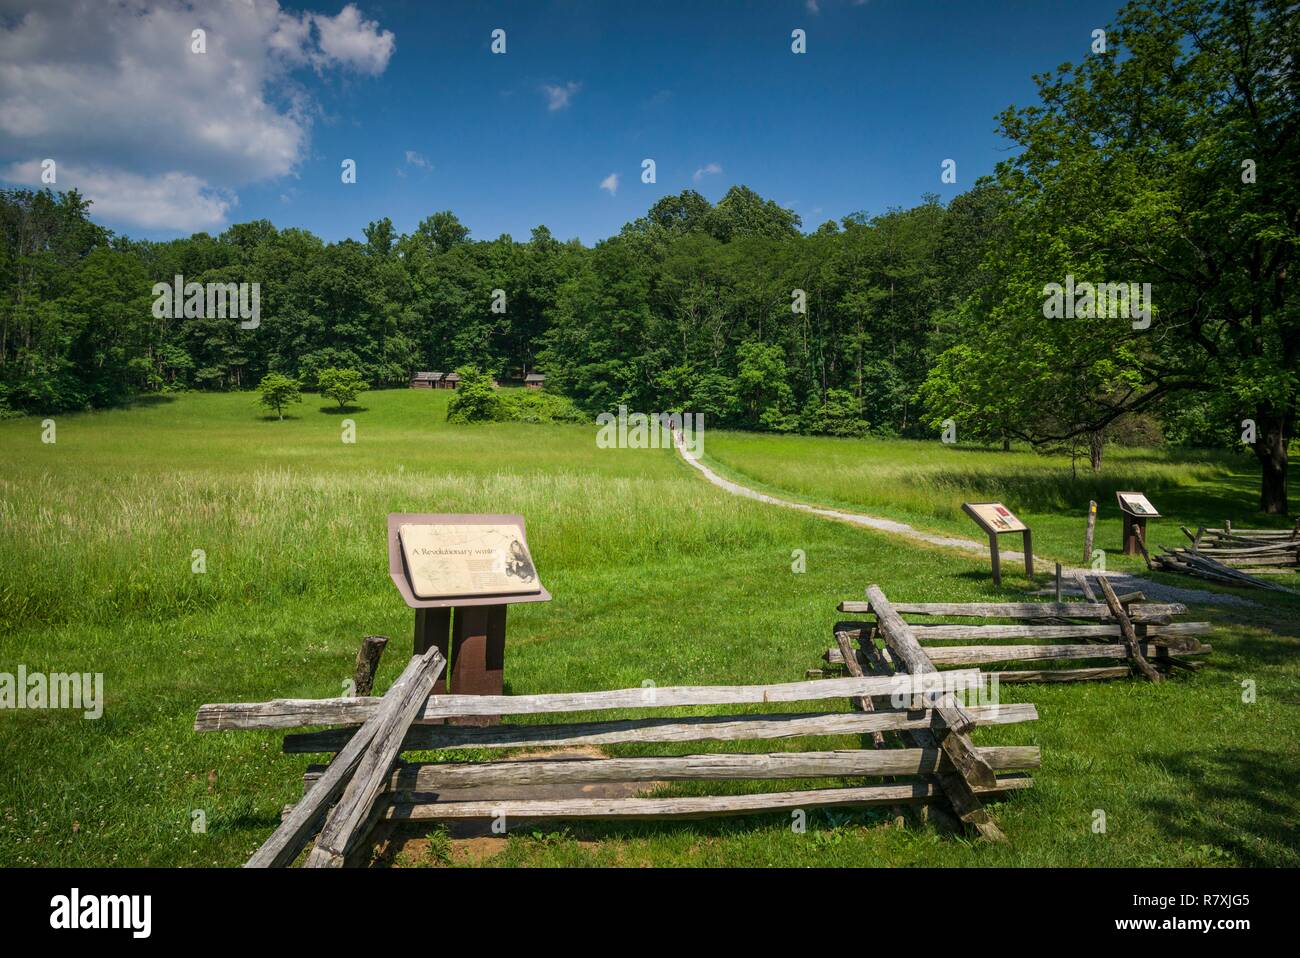 United States, New Jersey, Morristown, Parc historique national de Morristown, Jockey Hollow, camp d'hiver et cabines site utilisé par les soldats américains pendant la guerre de la Révolution américaine Banque D'Images